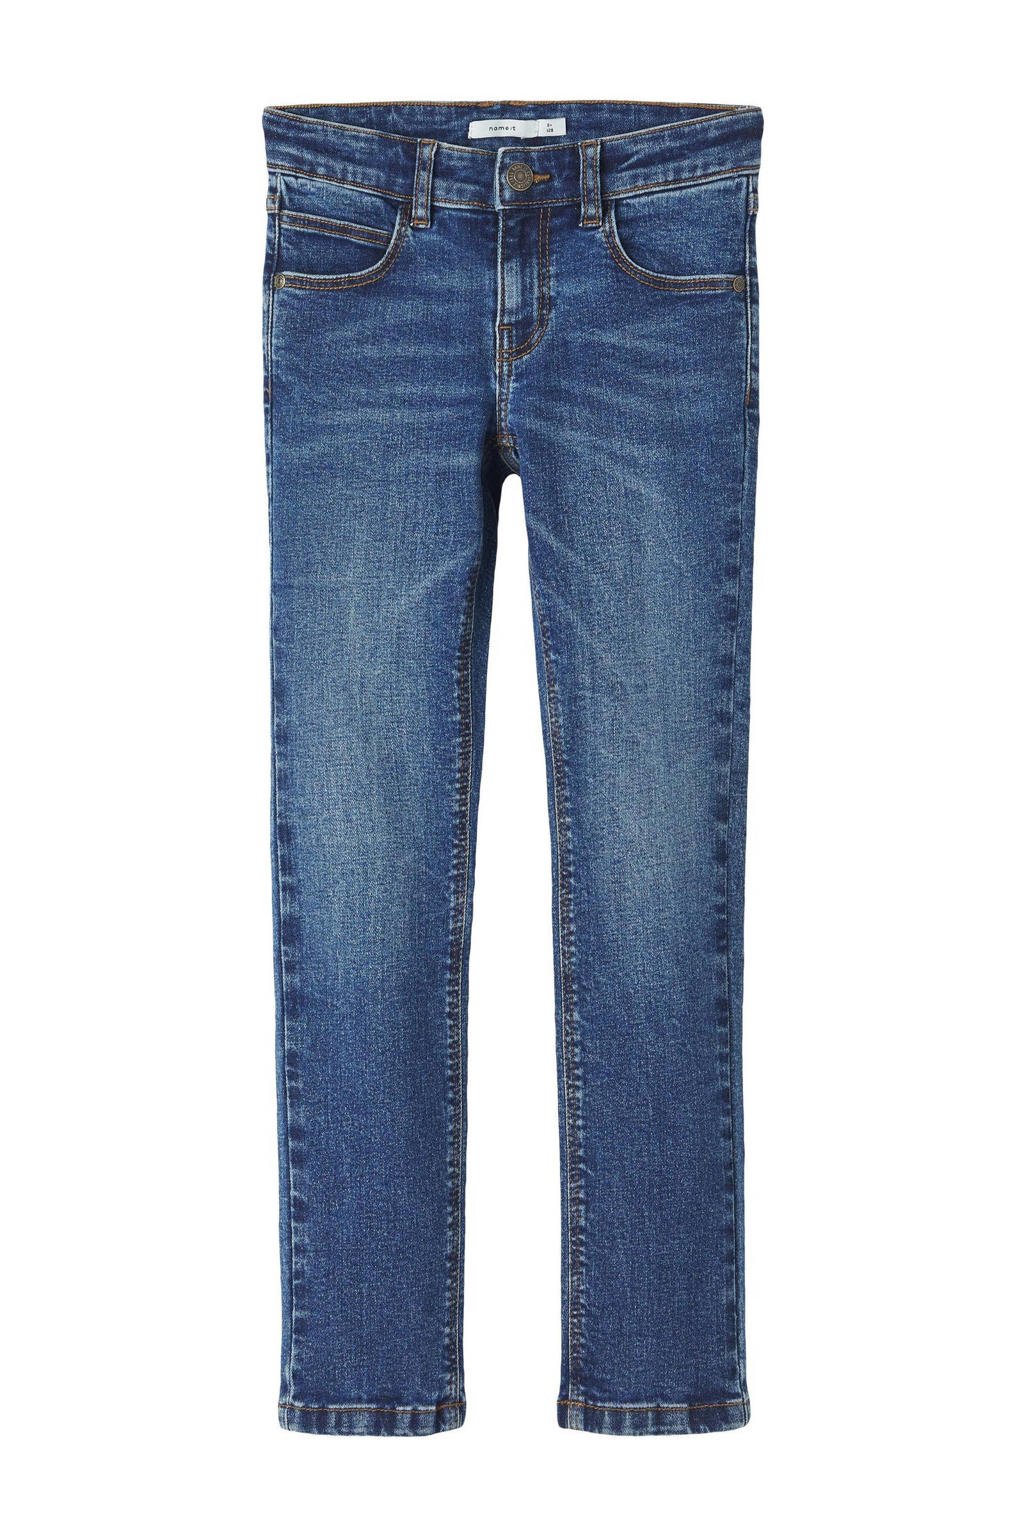 NAME IT KIDS slim fit jeans NKFSALLI medium blue denim